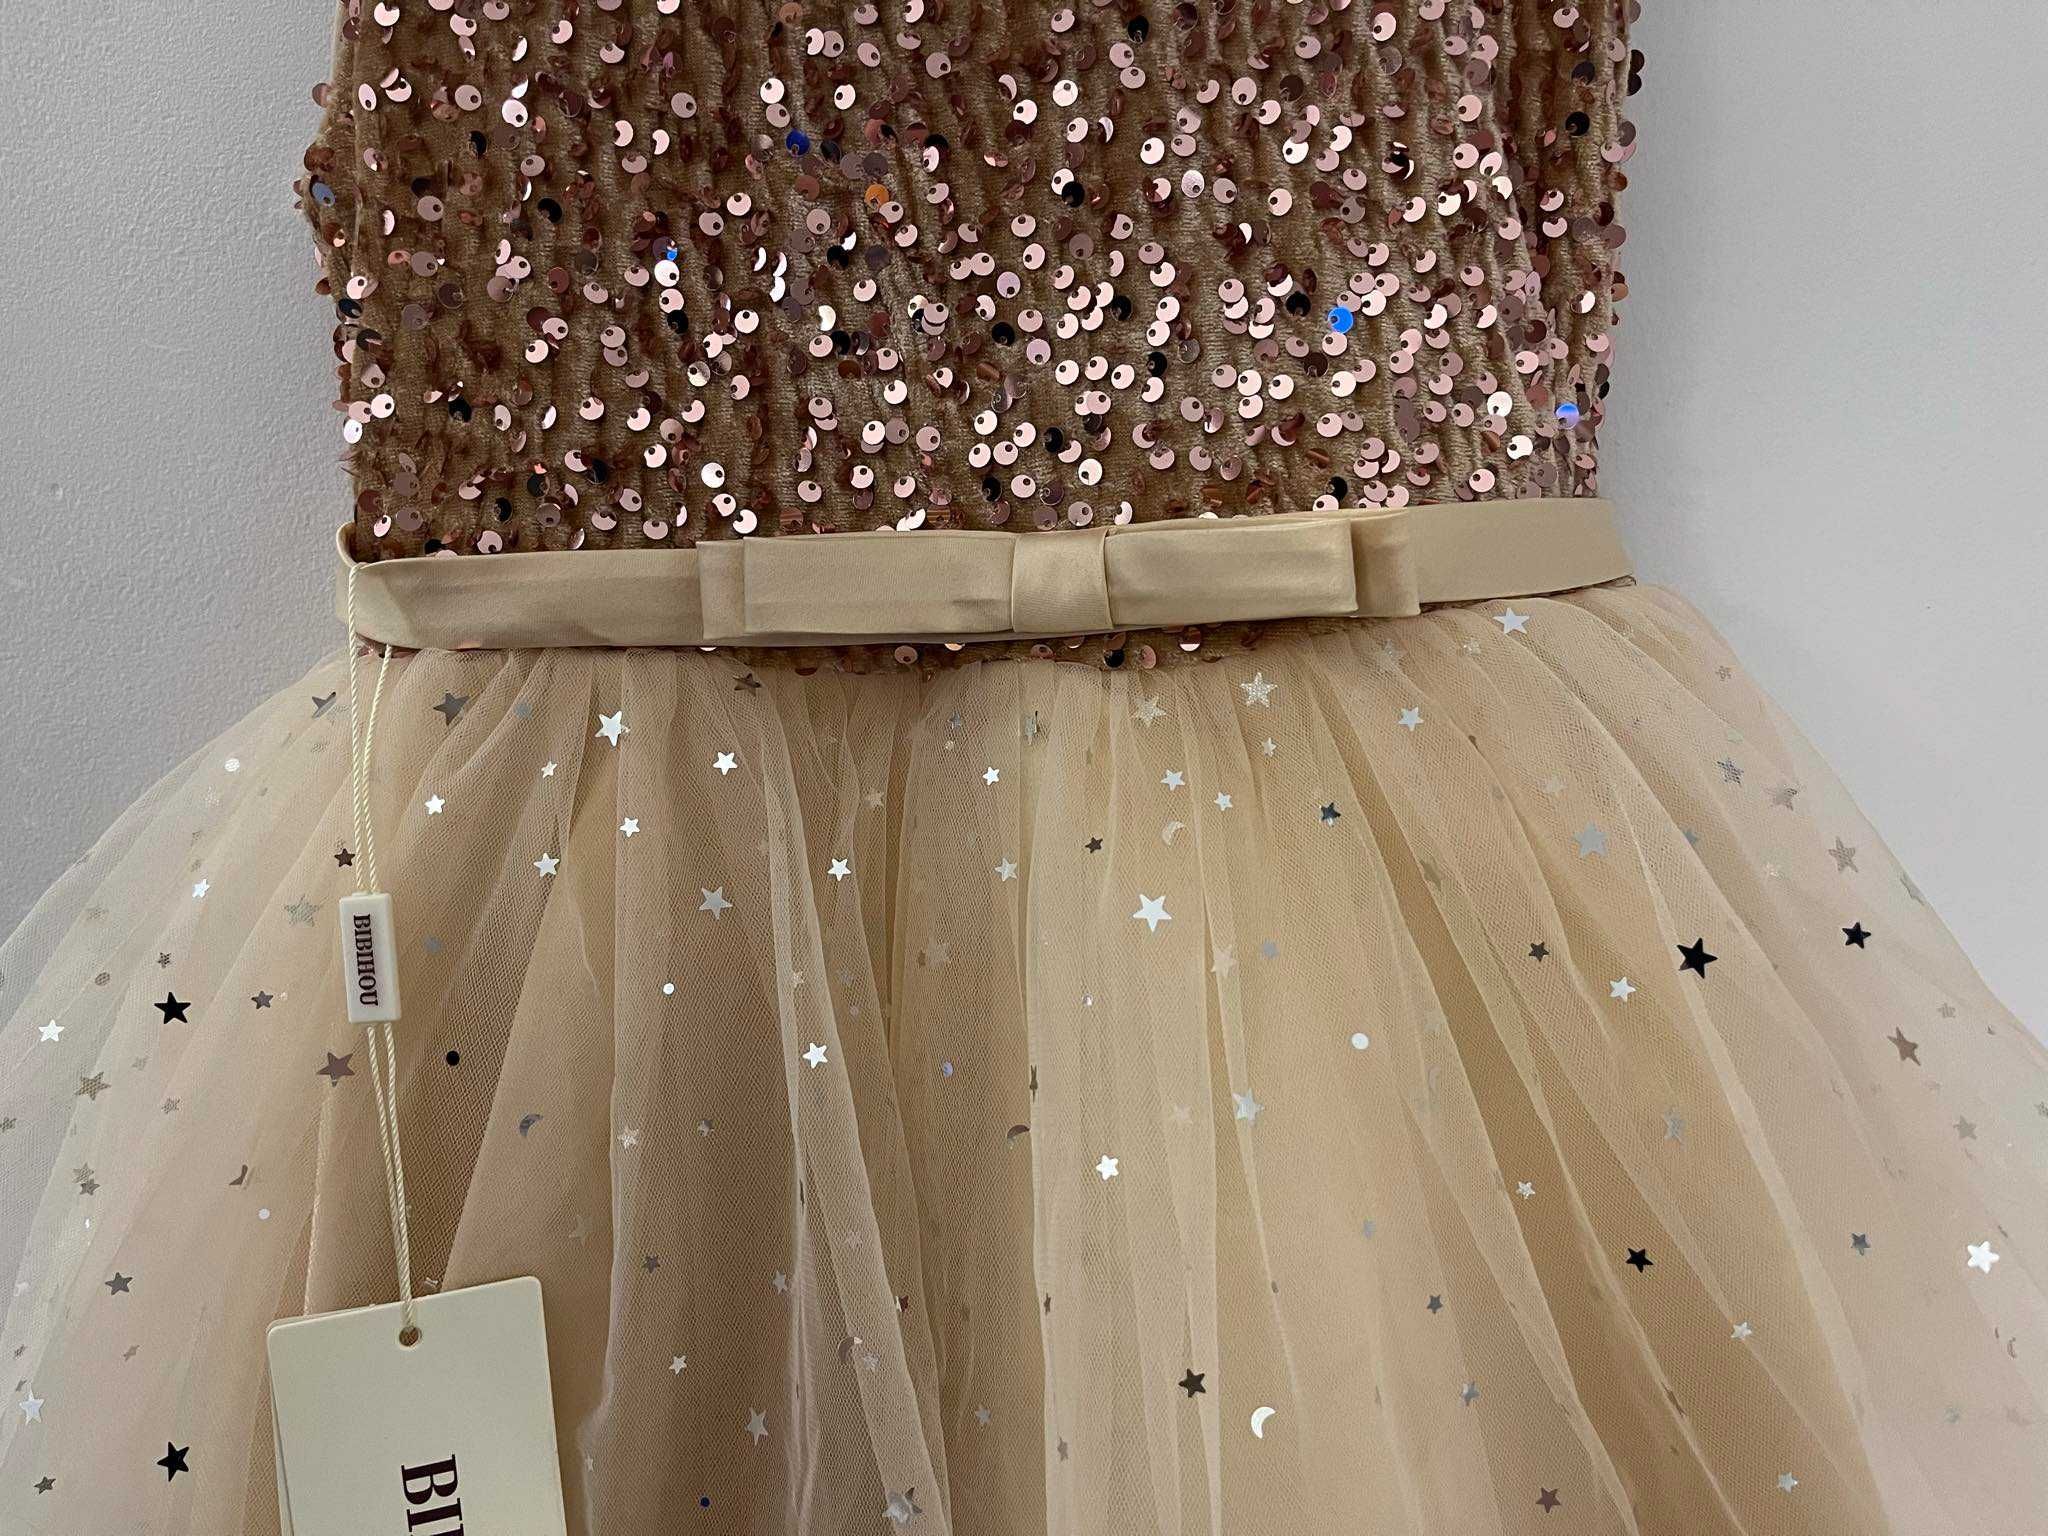 Sukienka złota roz. 134 cm